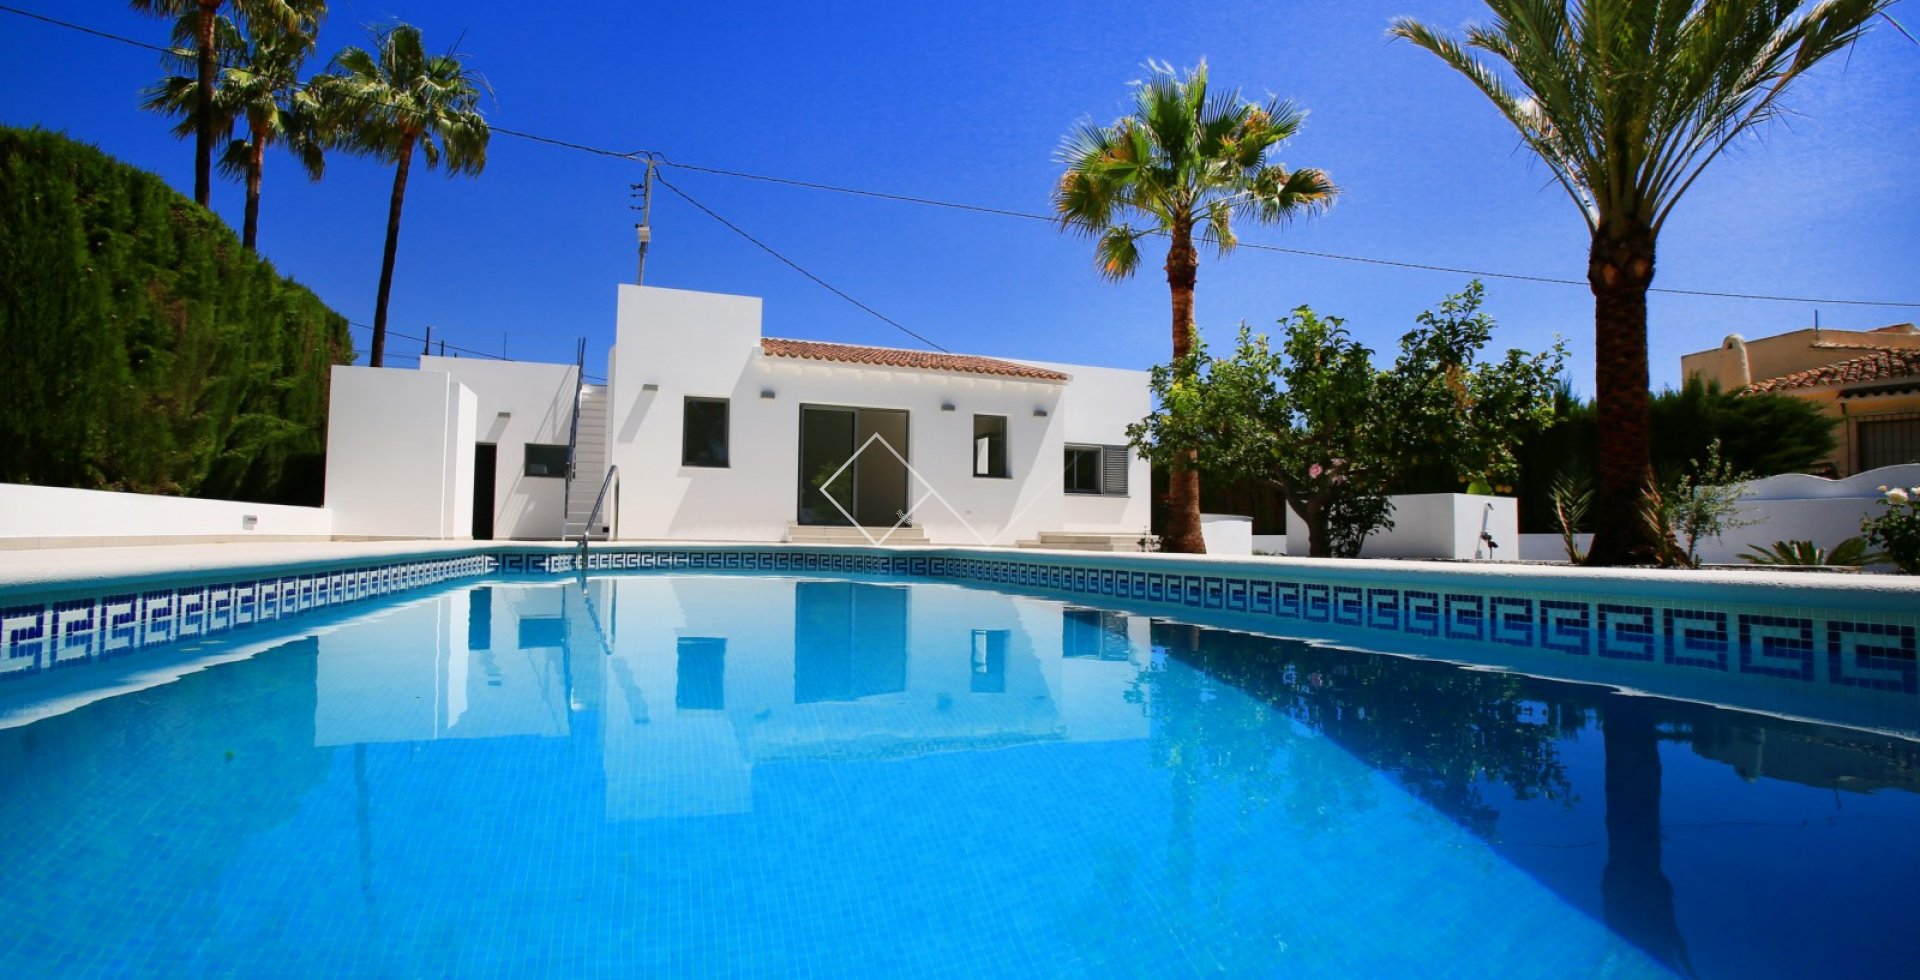 piscina palmeras - Villa reformada en venta en Benissa, a 200m de la playa